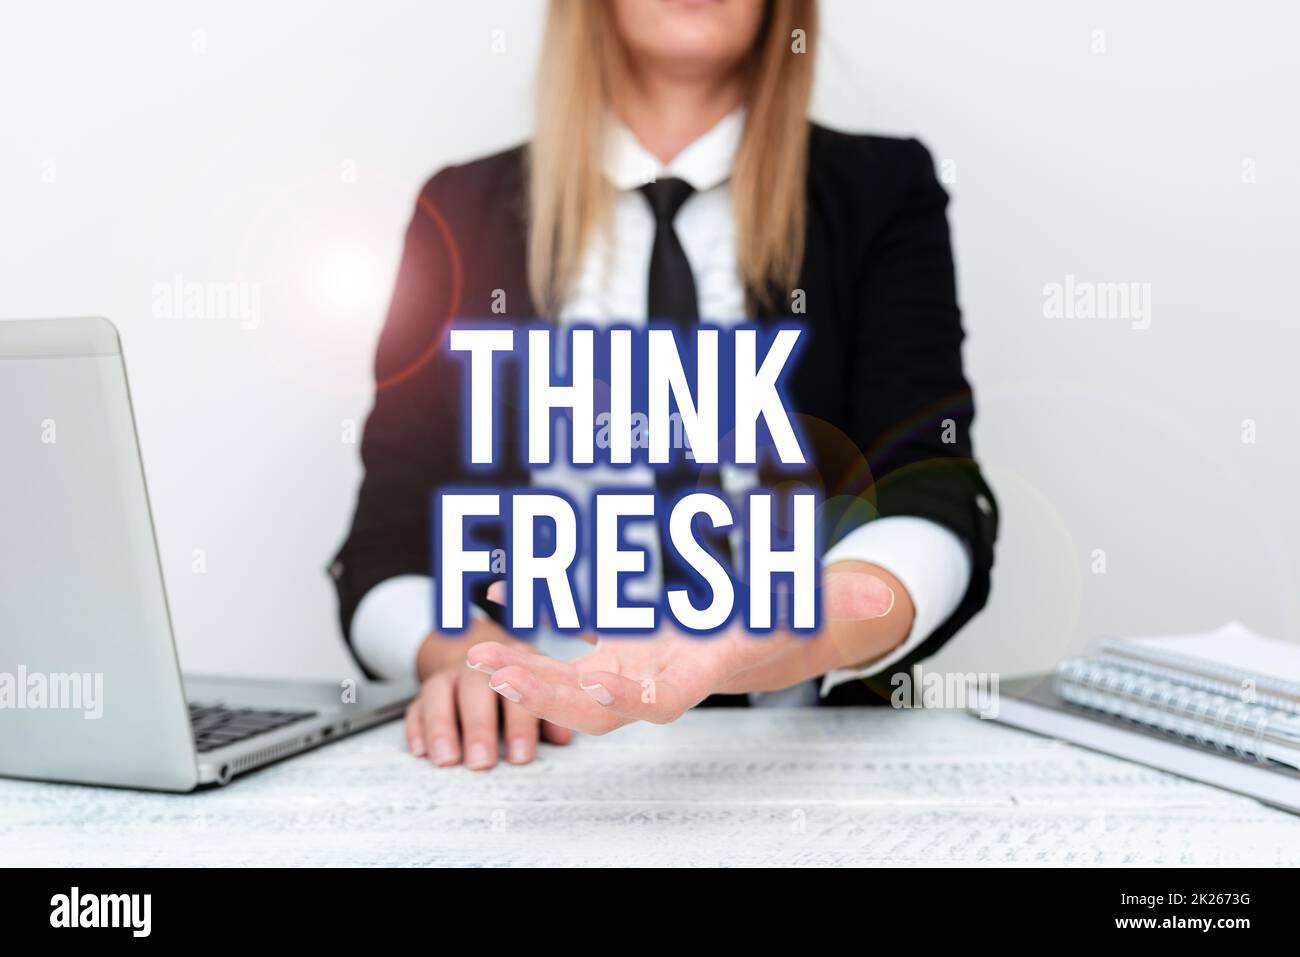 Textbeschriftung präsentiert „Think Fresh“. Konzept bedeutet eine neue Denkperspektive bei der Erstellung von Ideen und Konzepten Kursleiter unterrichtet verschiedene Fertigkeiten, Lehrer erklärt neue Methoden Stockfoto